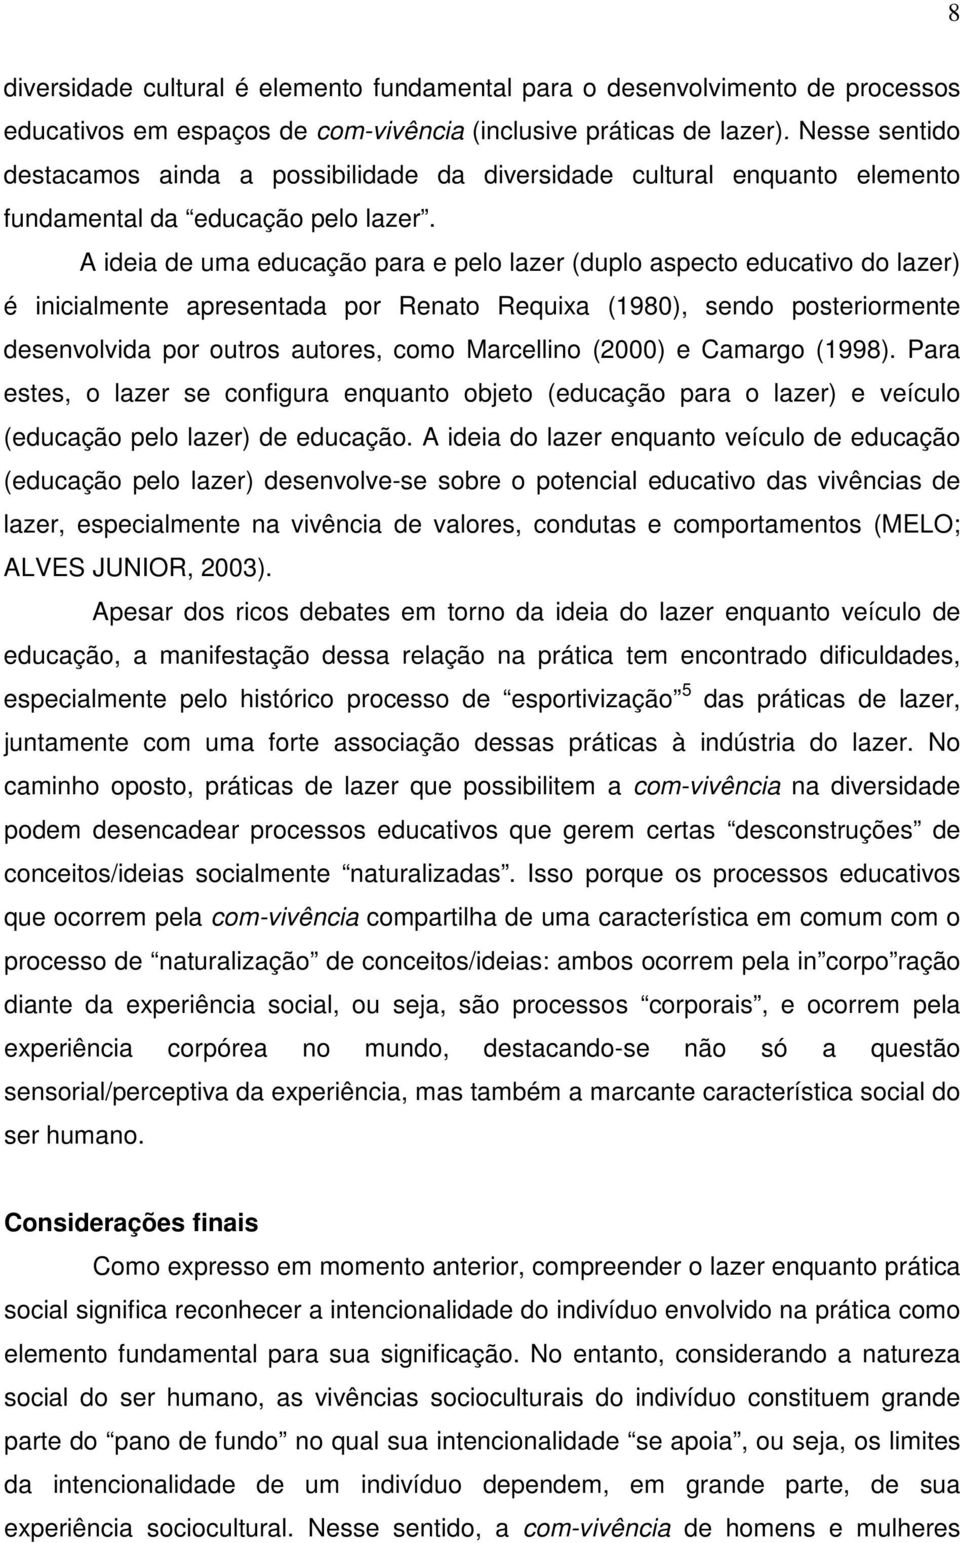 A ideia de uma educação para e pelo lazer (duplo aspecto educativo do lazer) é inicialmente apresentada por Renato Requixa (1980), sendo posteriormente desenvolvida por outros autores, como